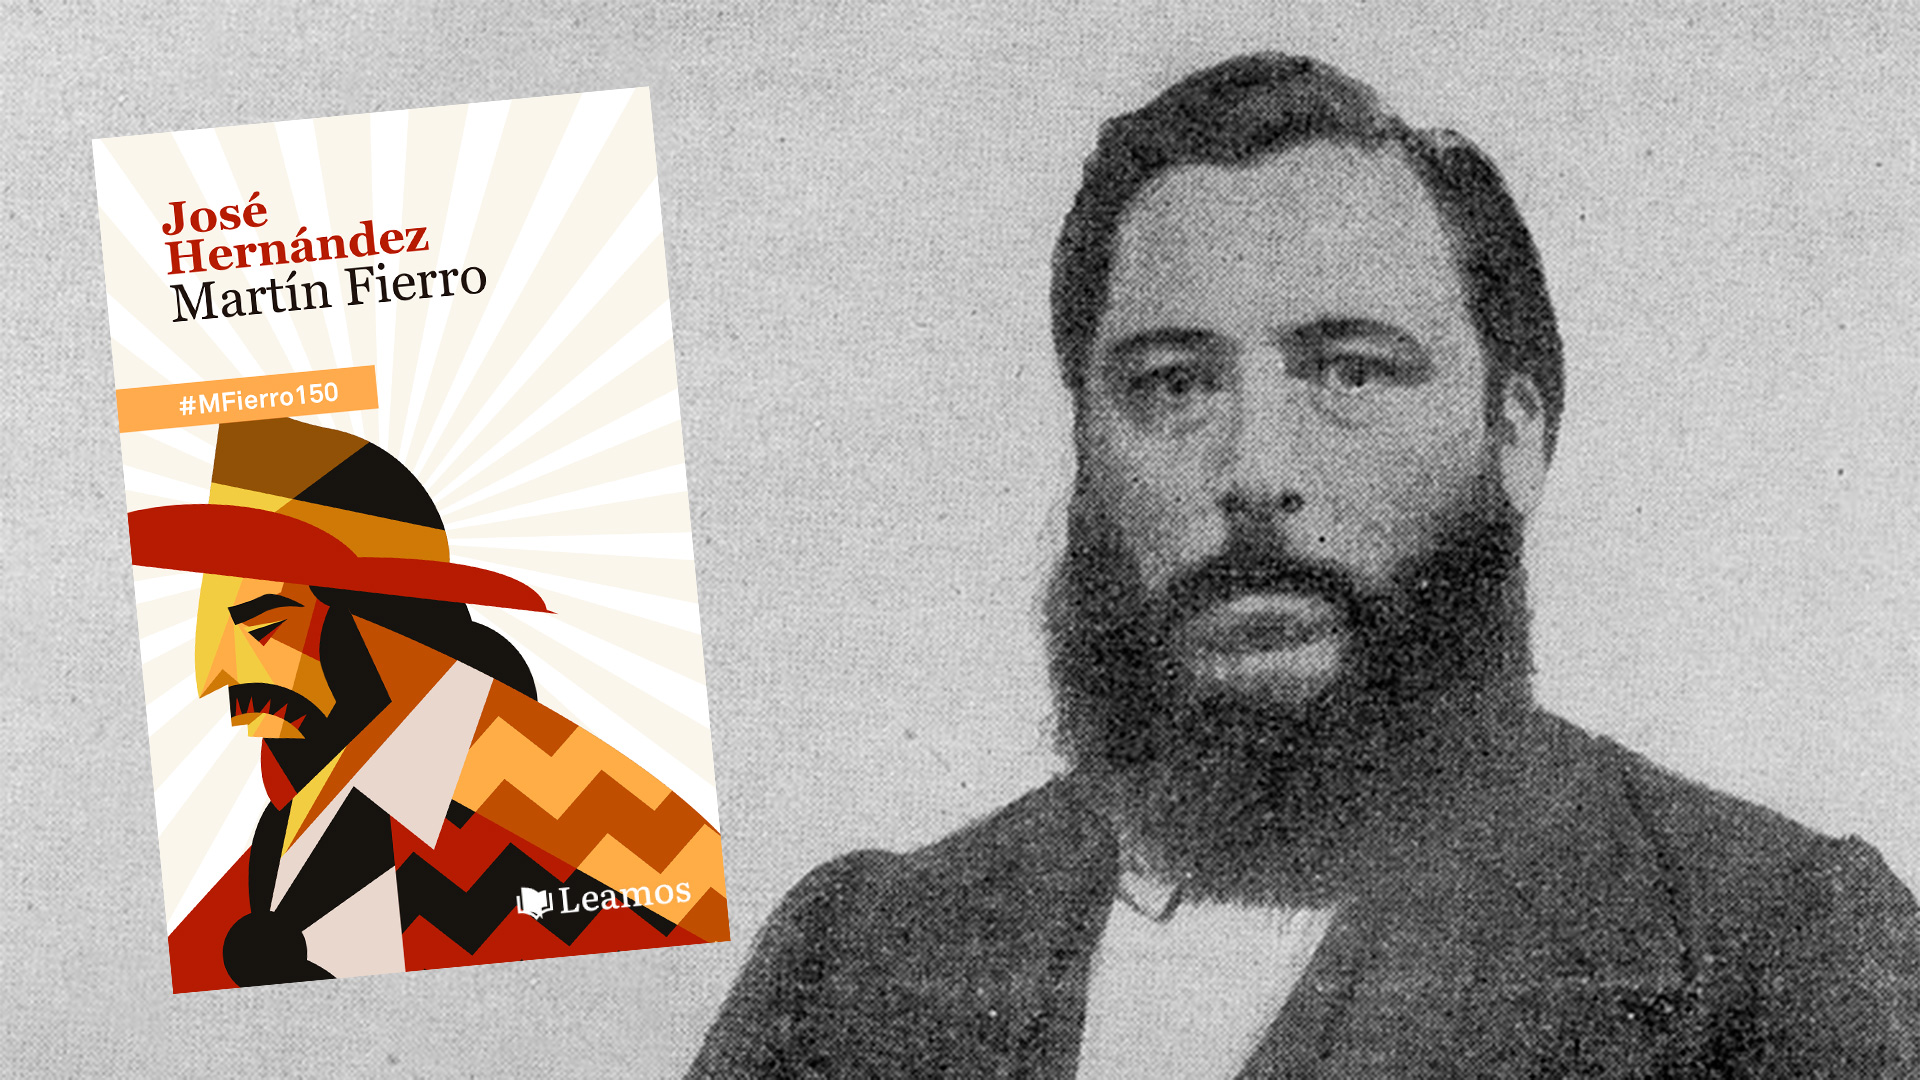 Rebeldía, marginalidad, coraje, amistad: el “Martín Fierro” cumple 150 años y acá se lo puede leer gratis